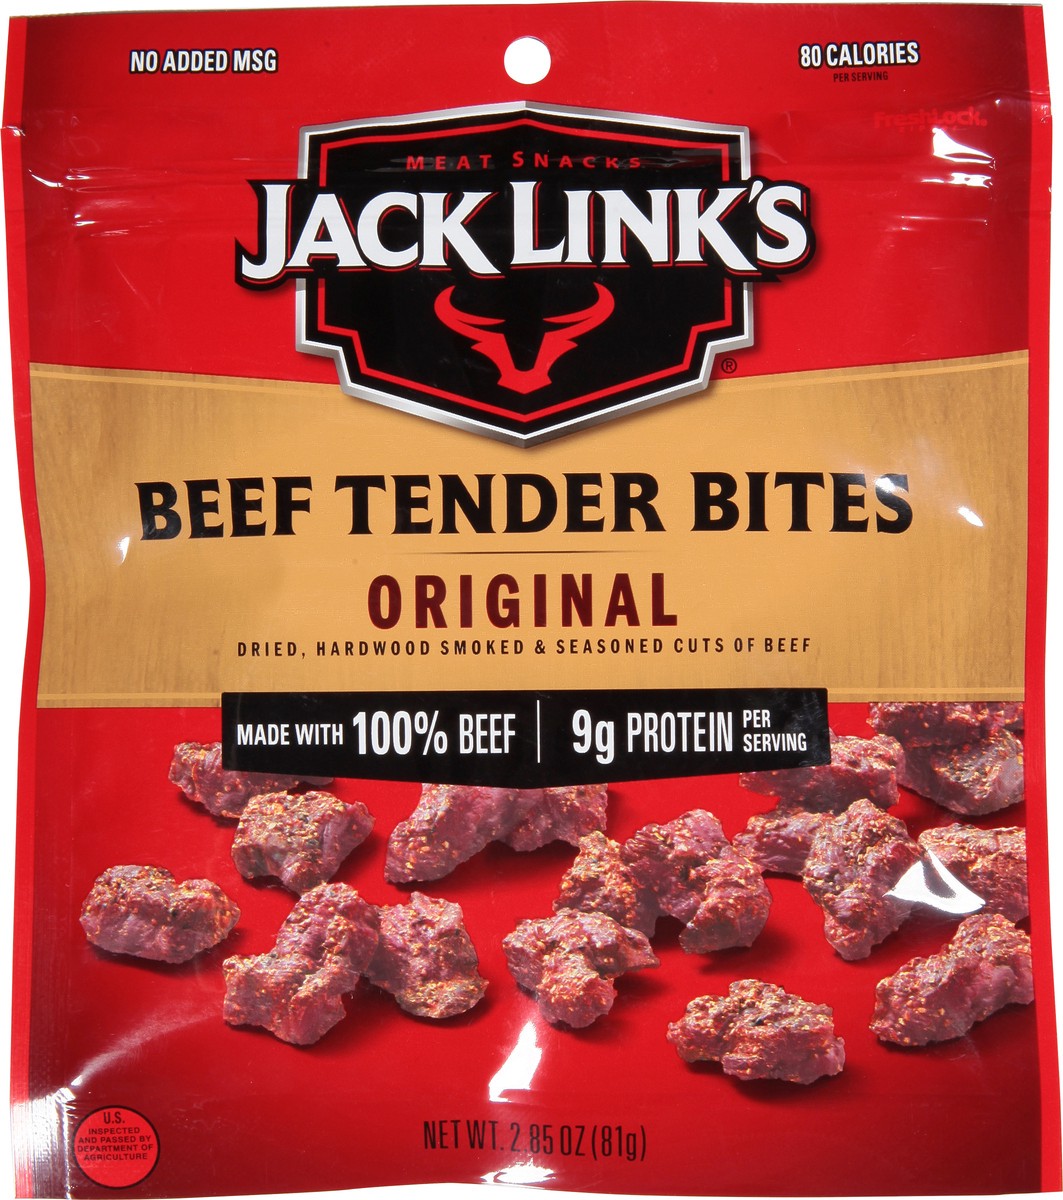 slide 6 of 9, Jack Link's Jack Links Meat Snacks Tender Bites Original Beef Steak - 2.85 Oz, 2.85 oz